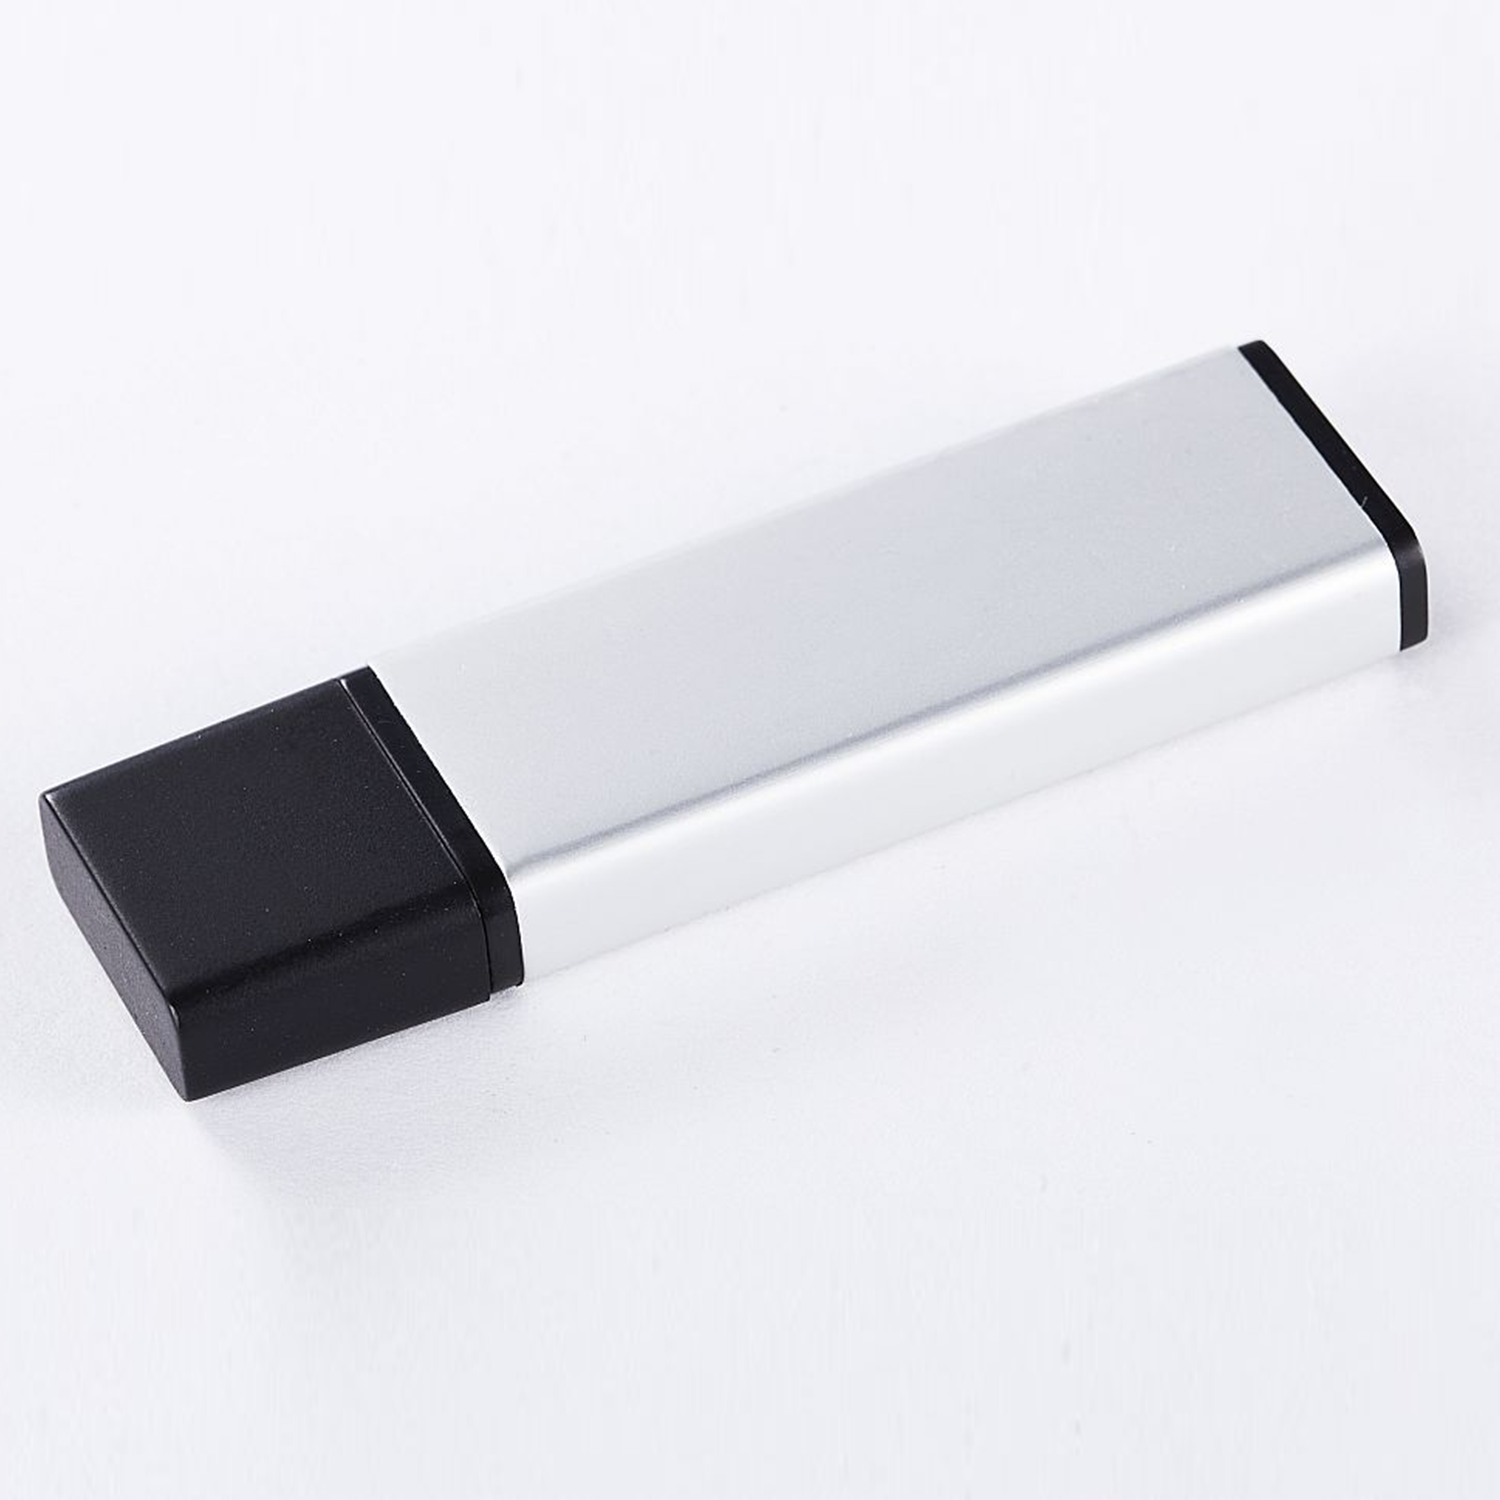 XLYNE USB 2.0 - GB GB) (ALUMINIUM, 2 USB 2 Stick